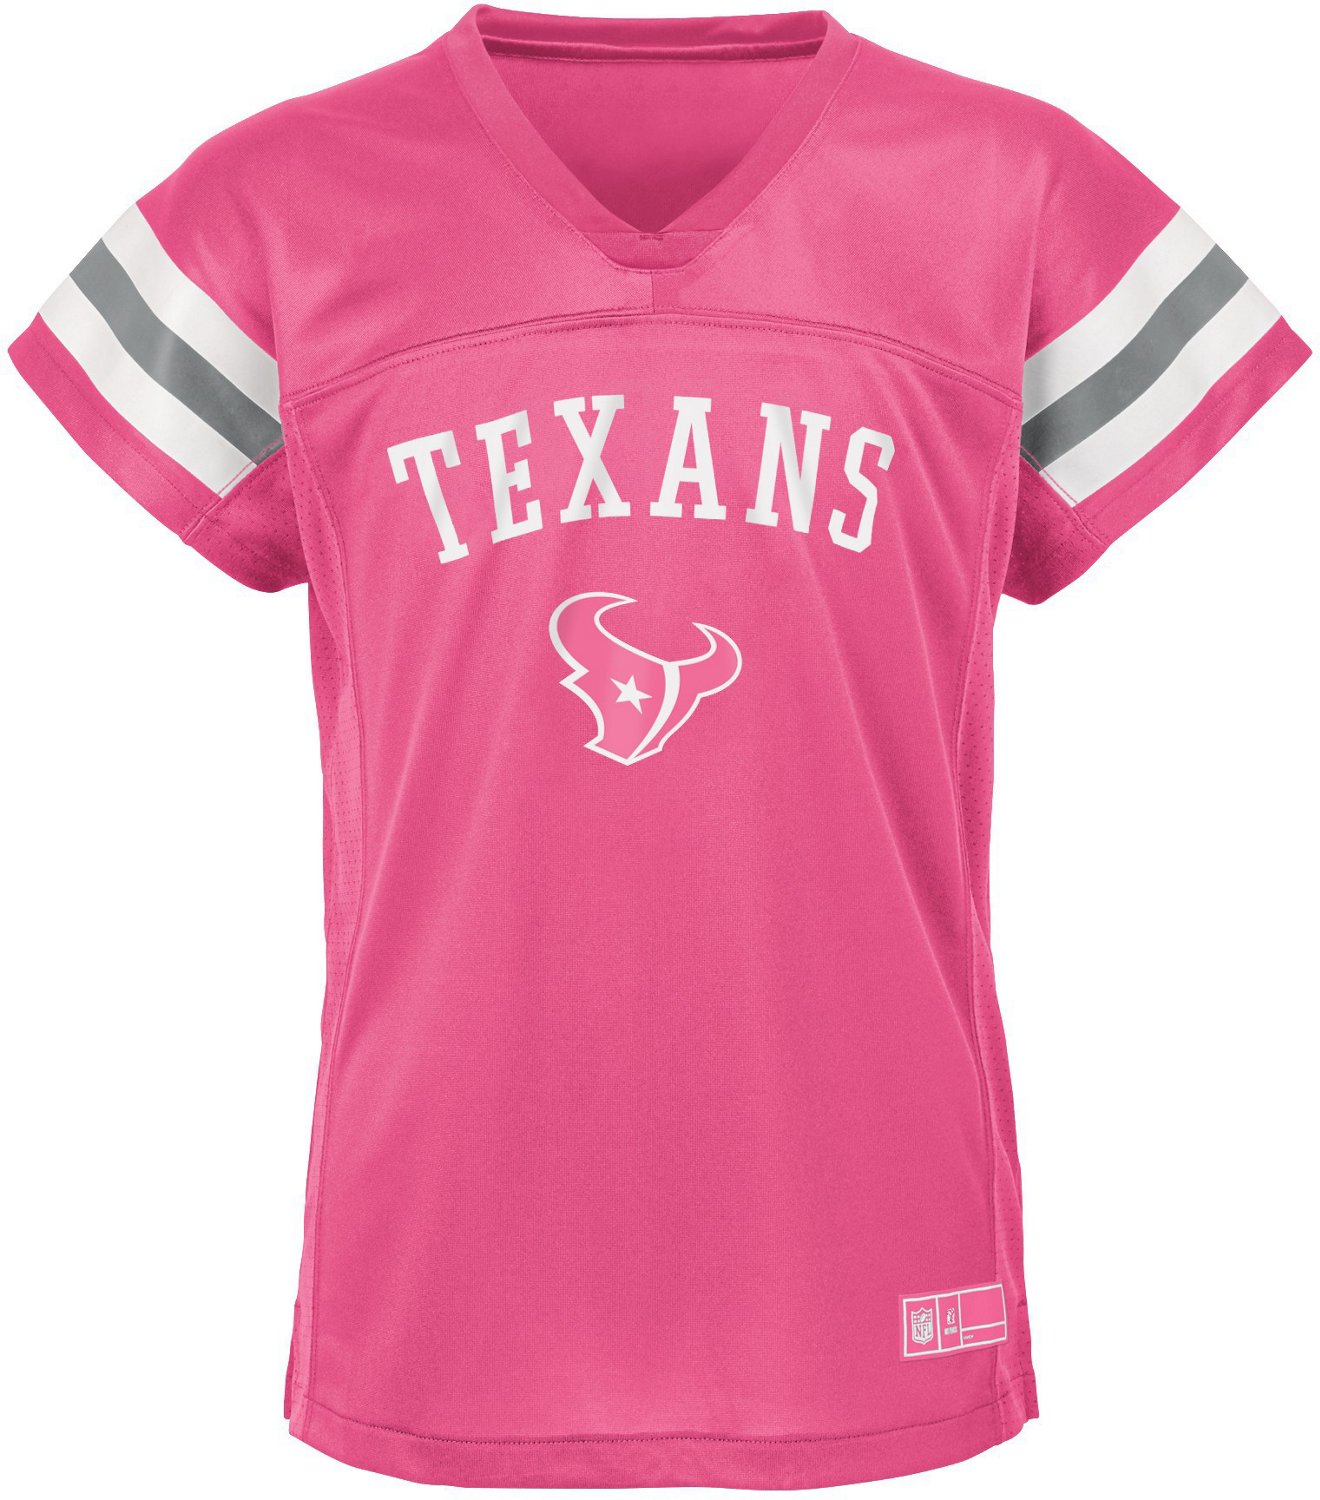 NFL Girls' Houston Texans Fashion Fan Gear Jersey | Academy